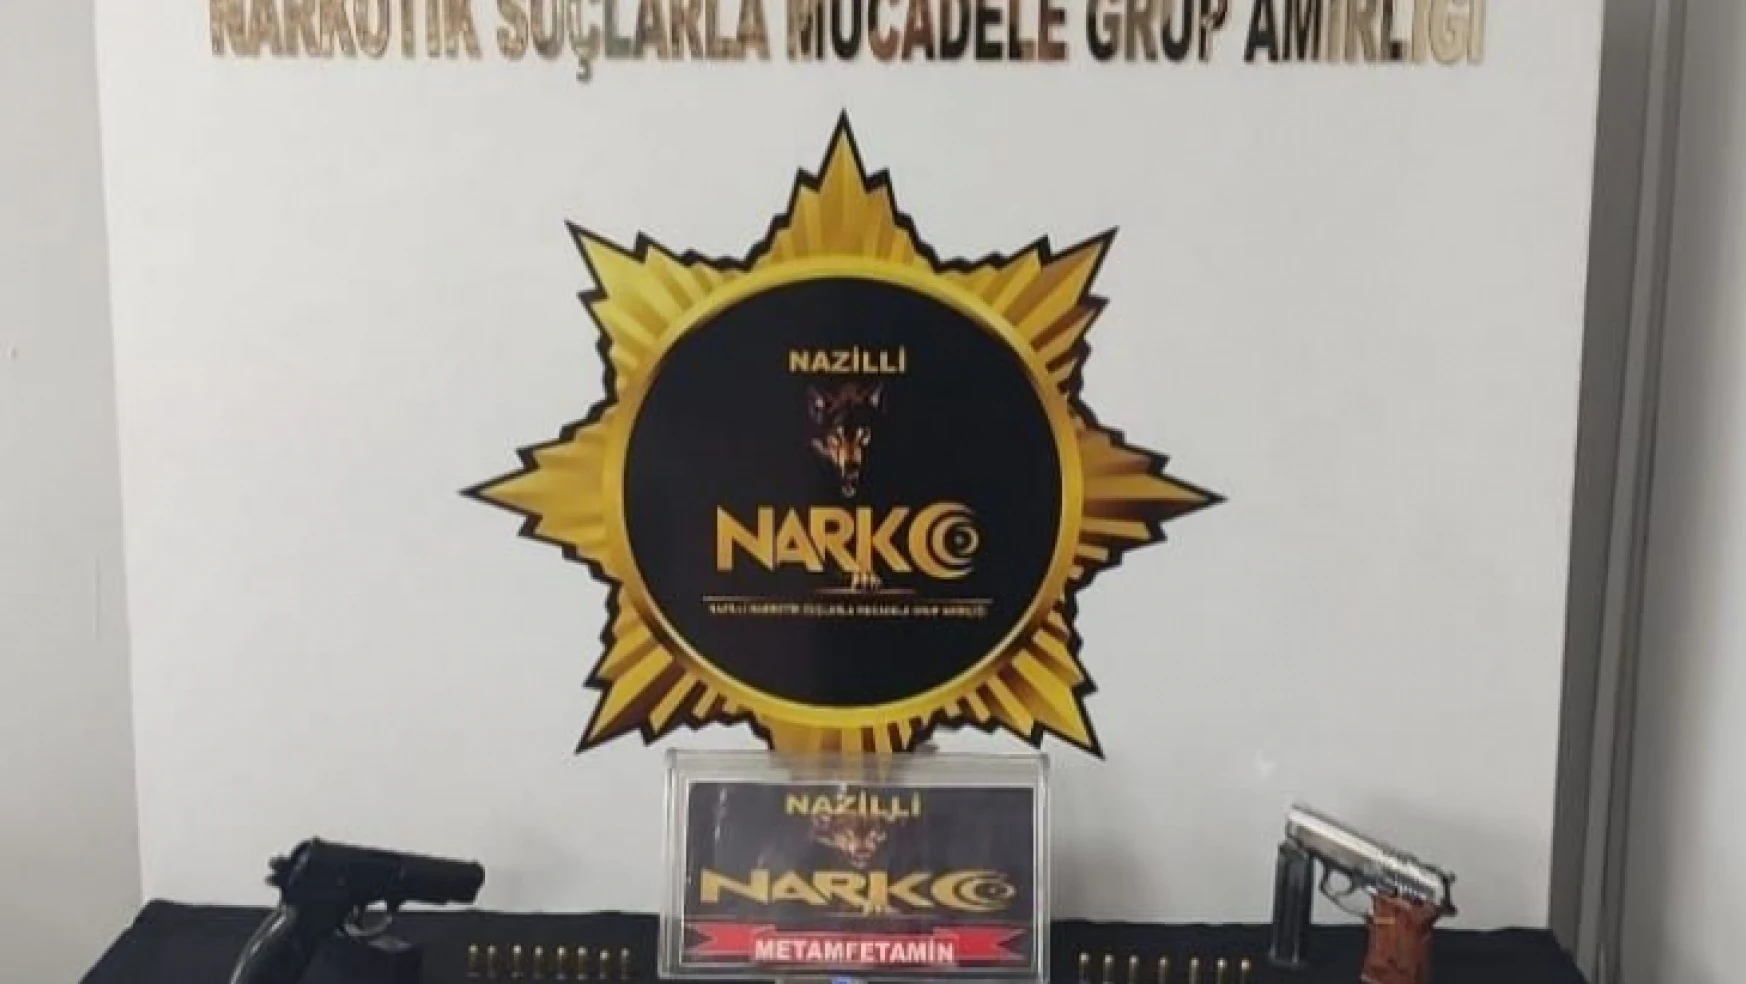 Nazilli NARKO'dan başarılı operasyon